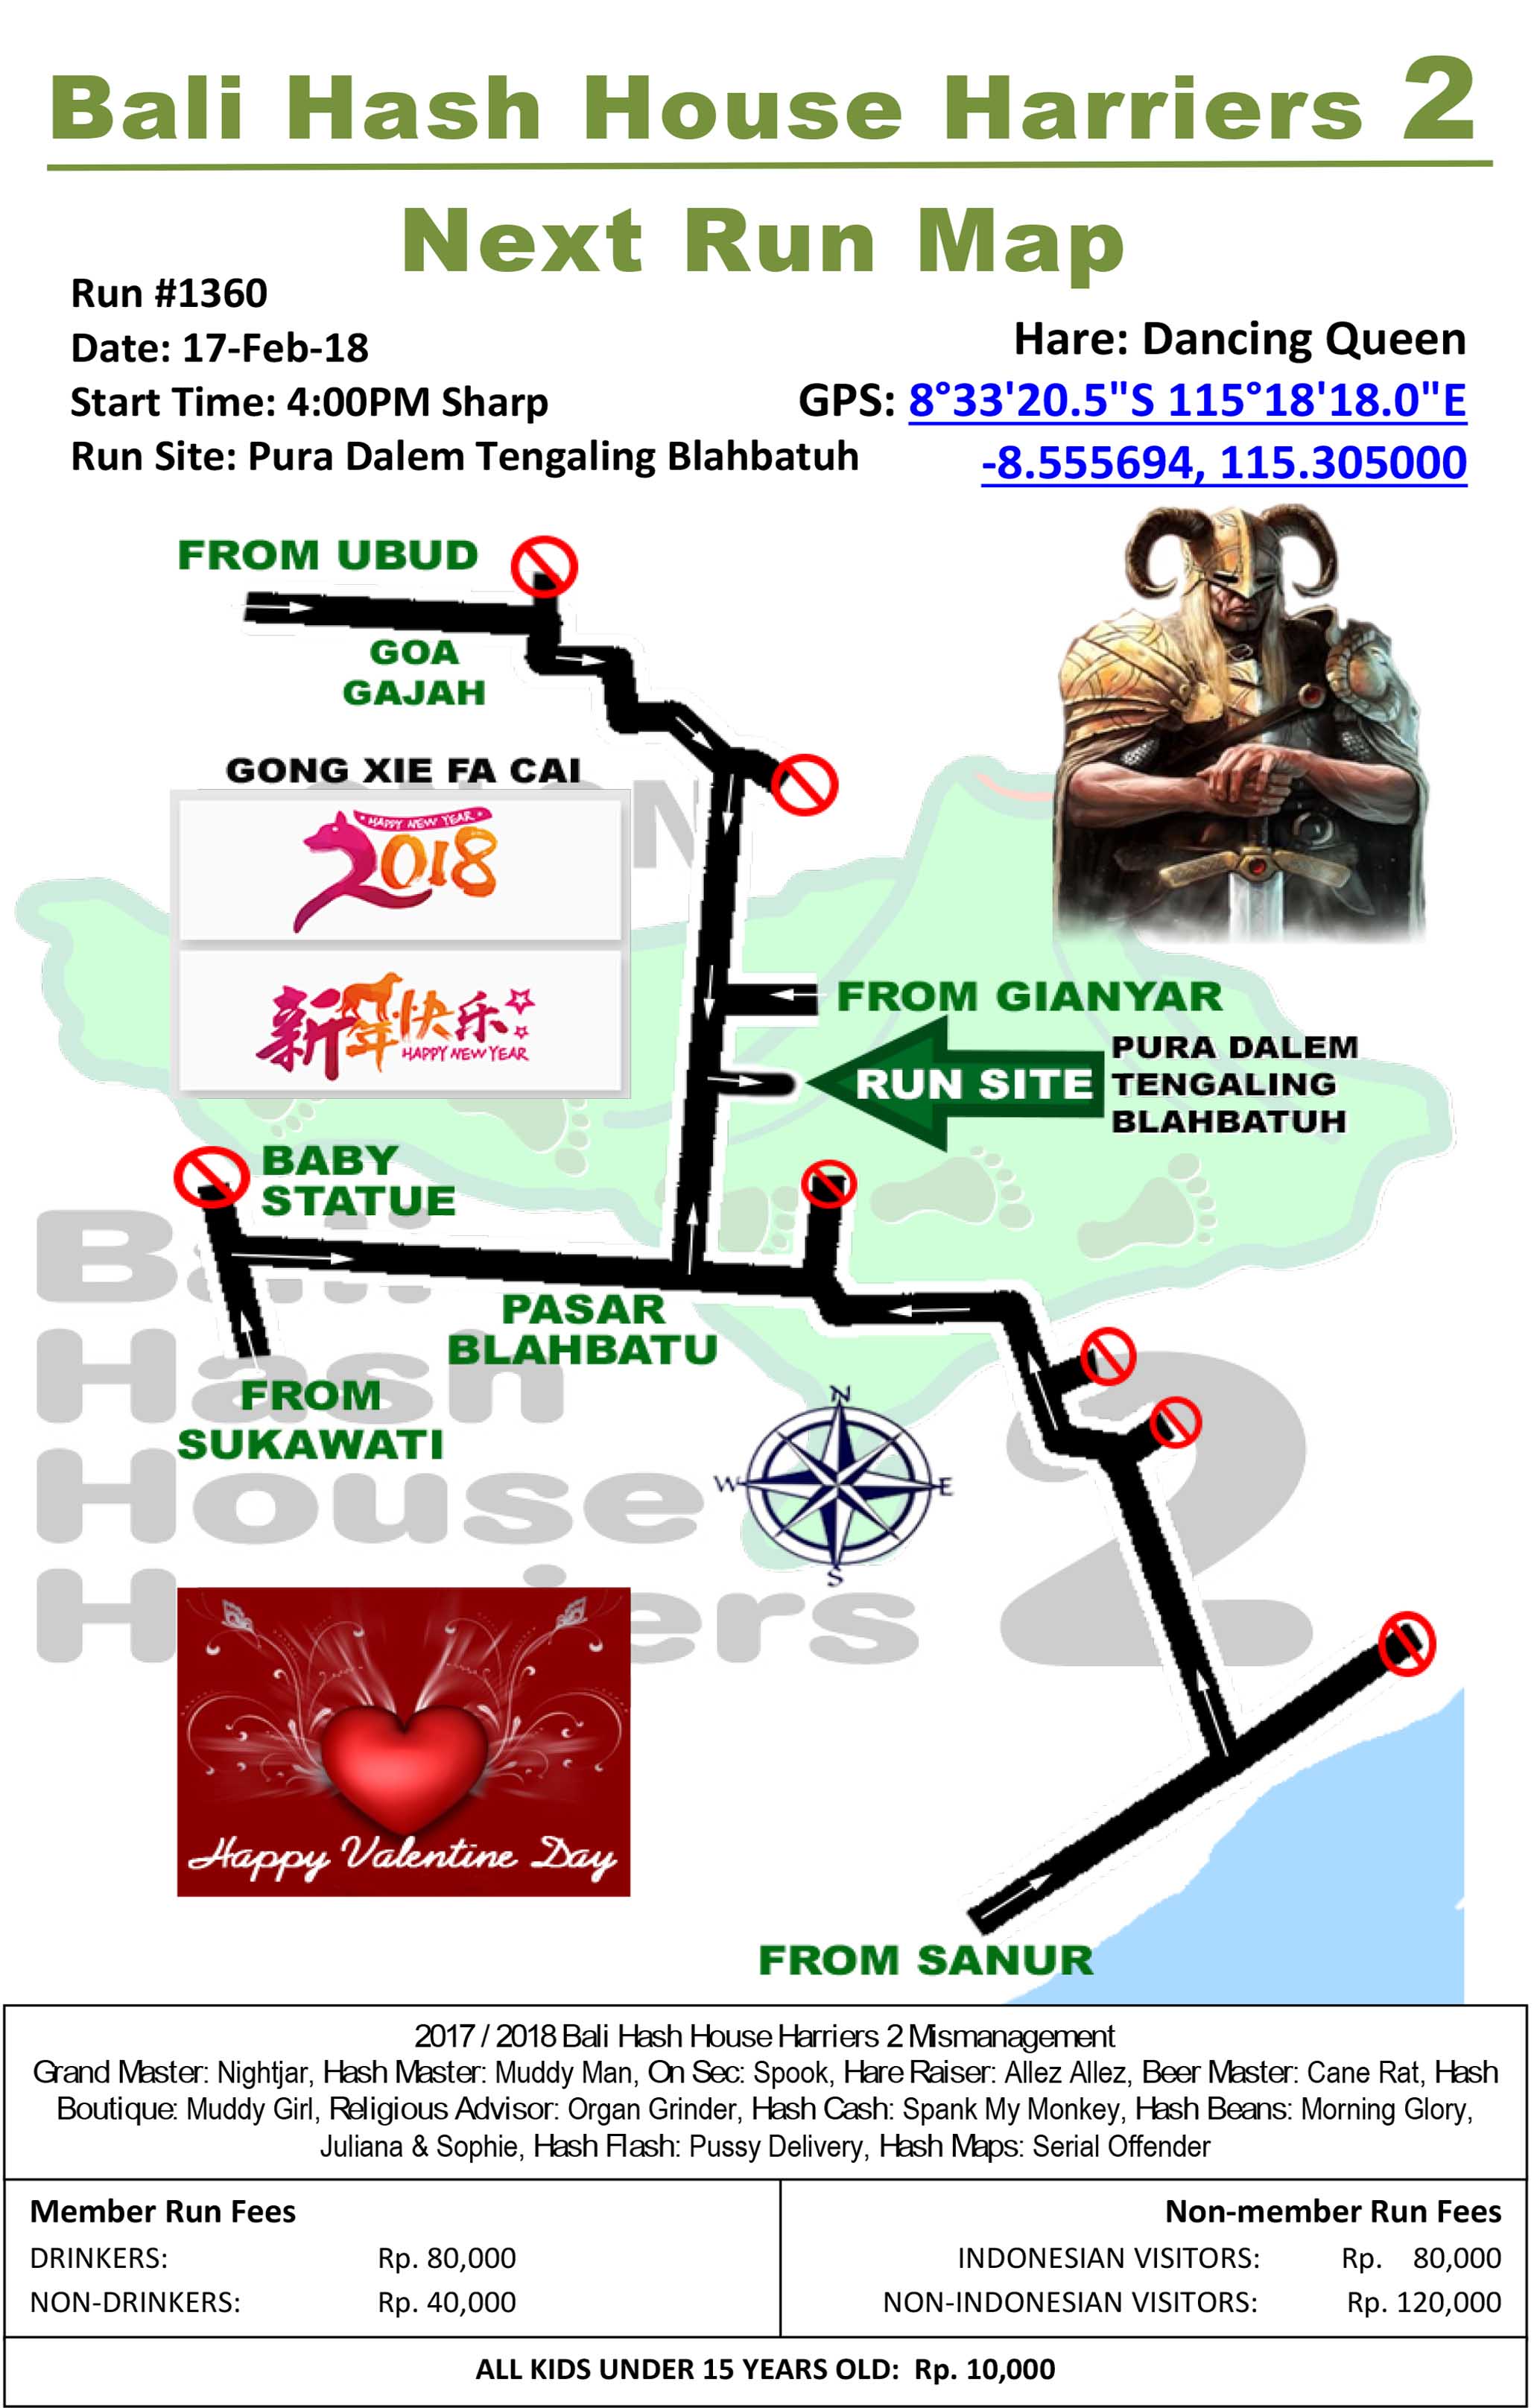 BHHH2 Next Run Map 1360 Pura Dalem Tengaling Desa Blahbatuh 17-Feb-18